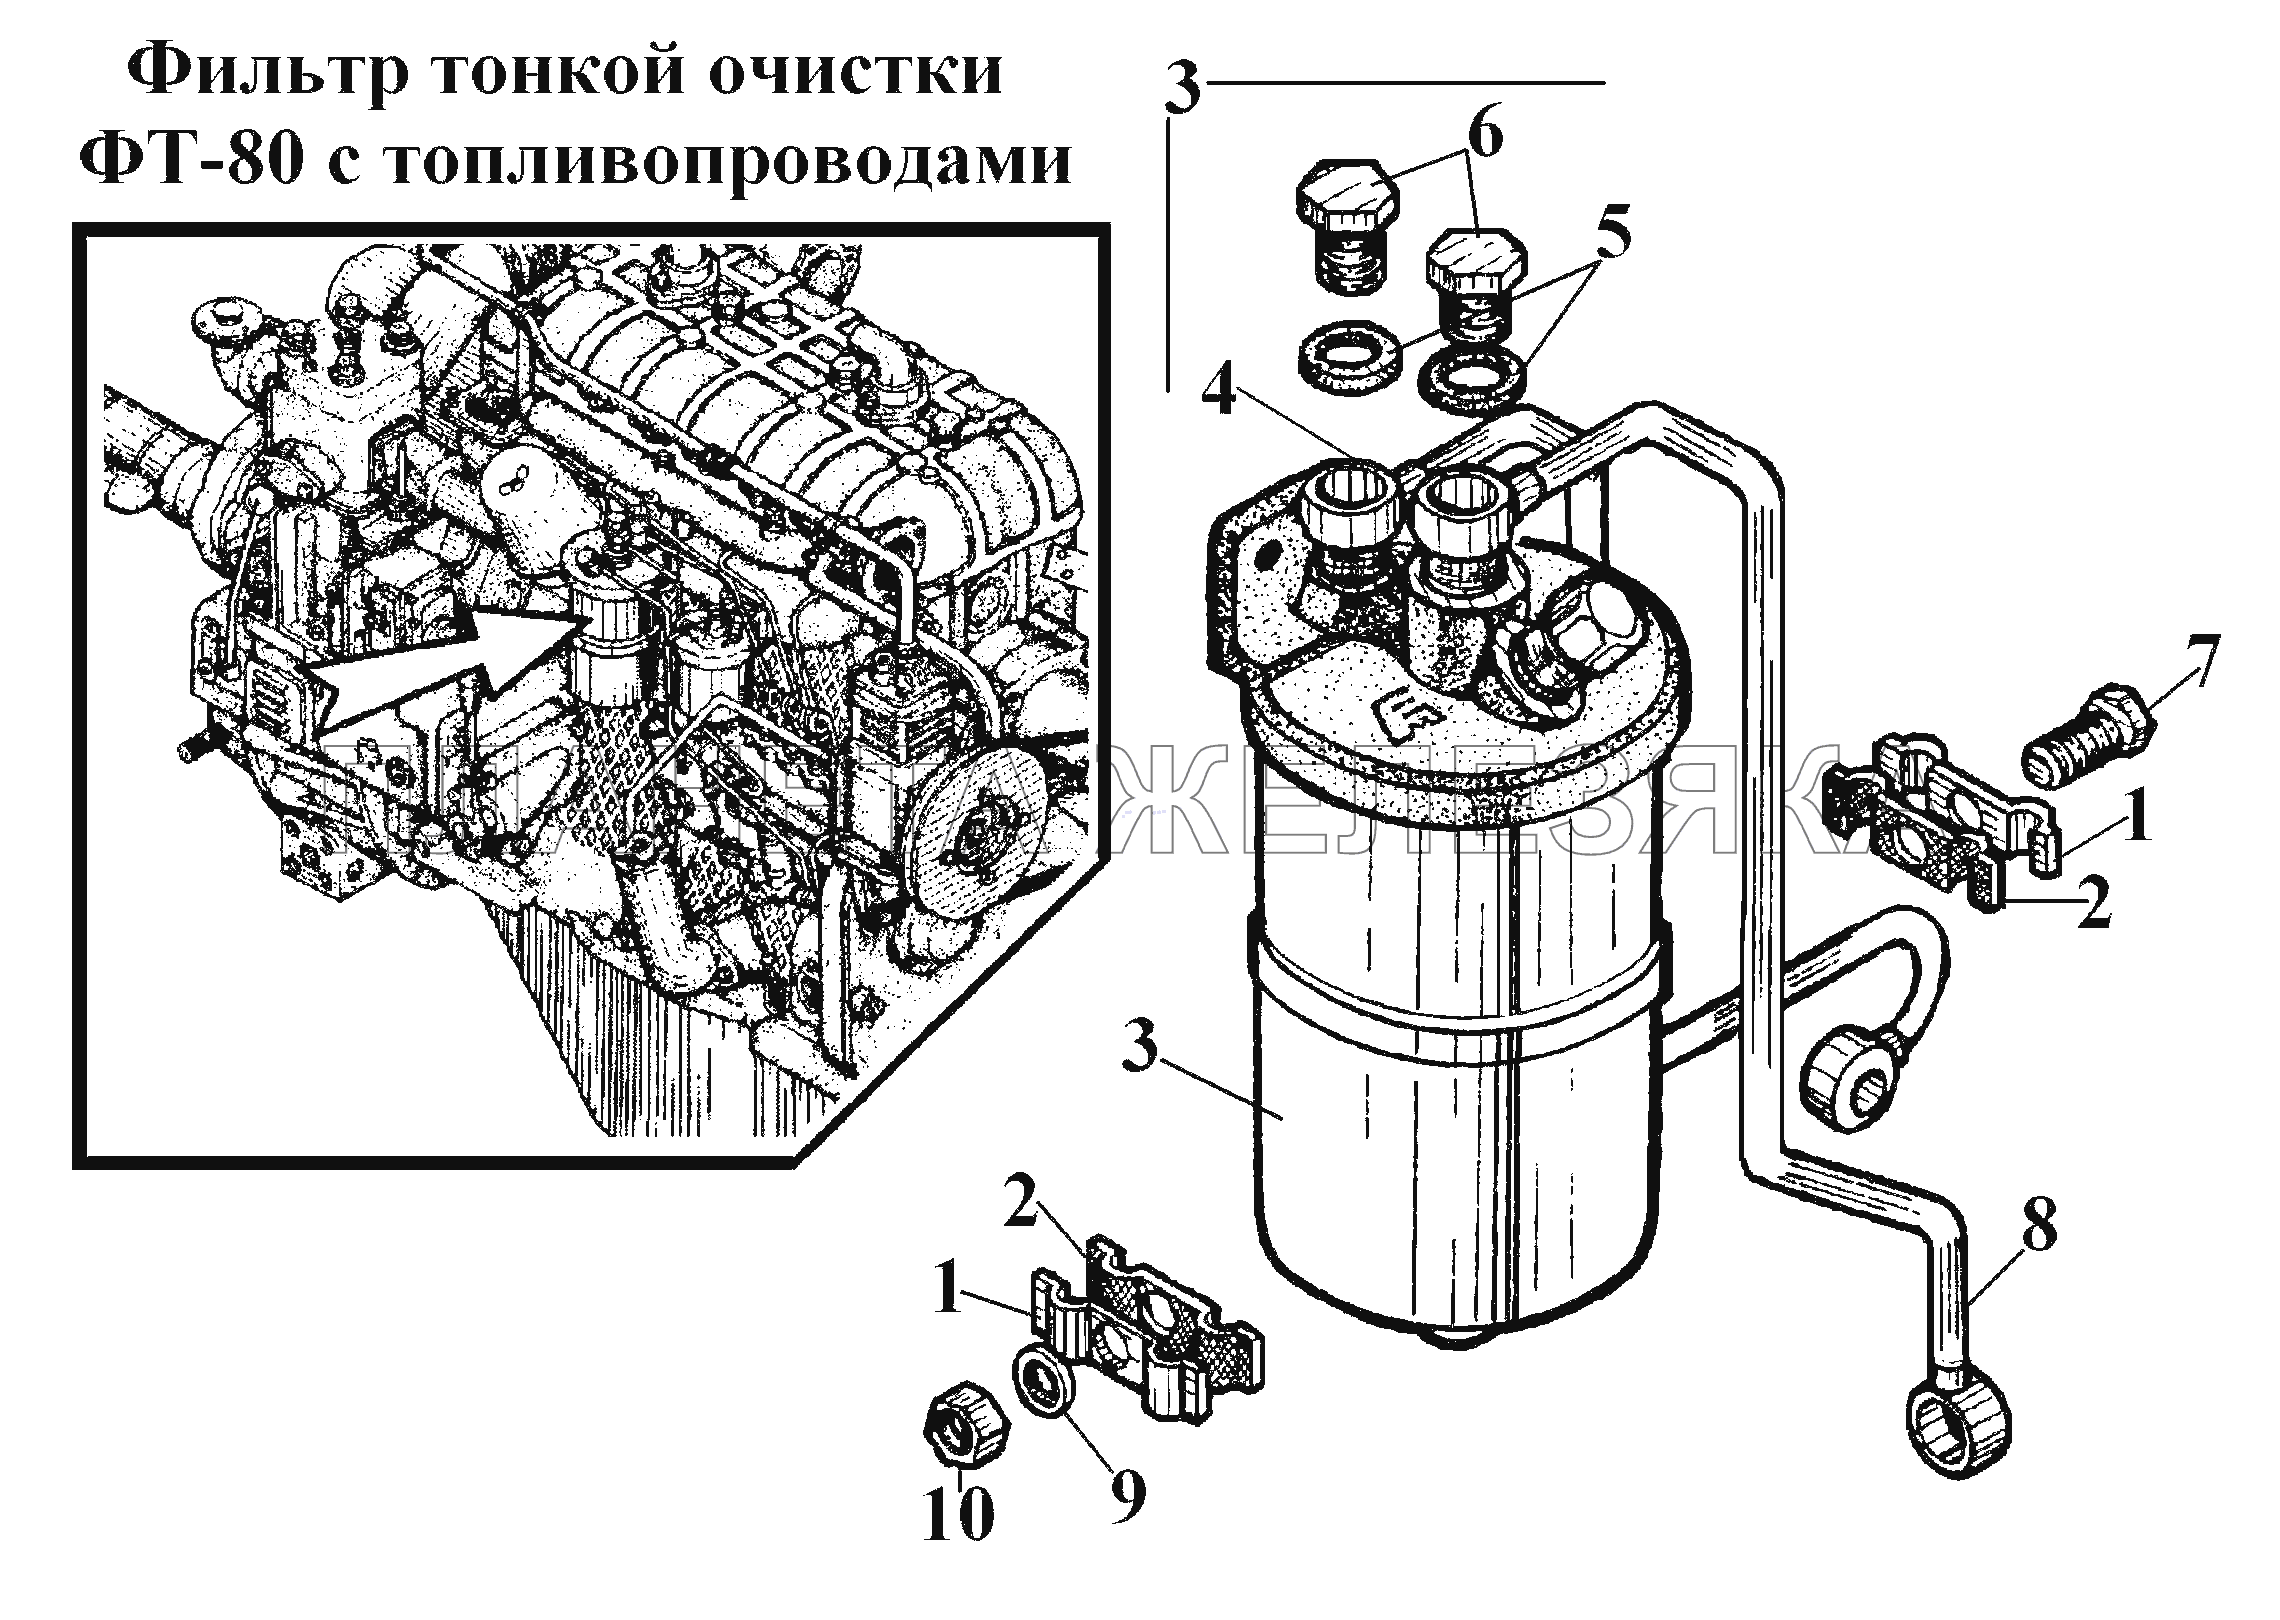 Фильтр тонкой очистки ФТ-80 с топливопроводами ВТ-100Д